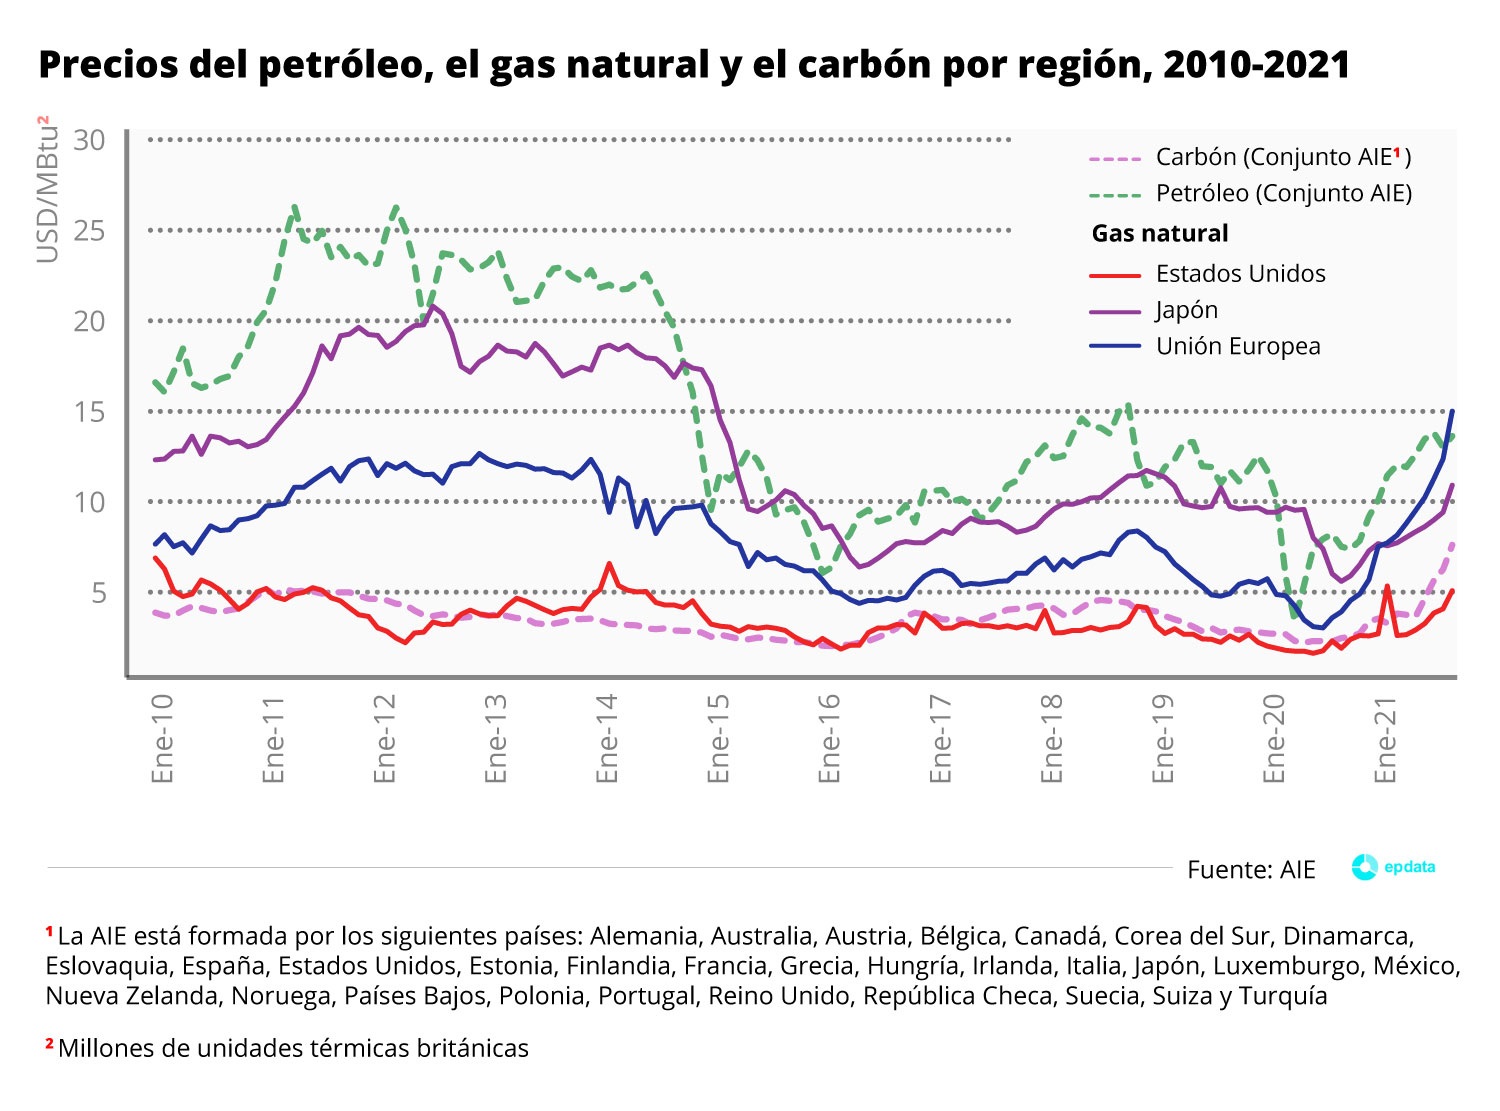 Precios del petróleo, gas natural y carbón por región (2010-2020)